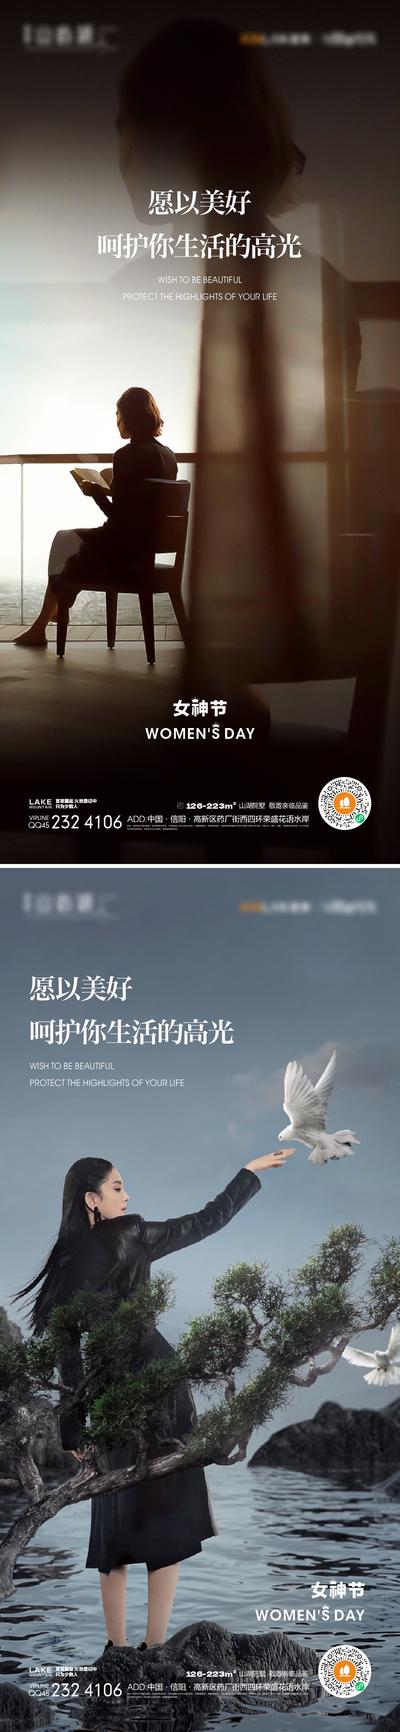 南门网 海报 地产 公历节日 38妇女节 女神节 人物